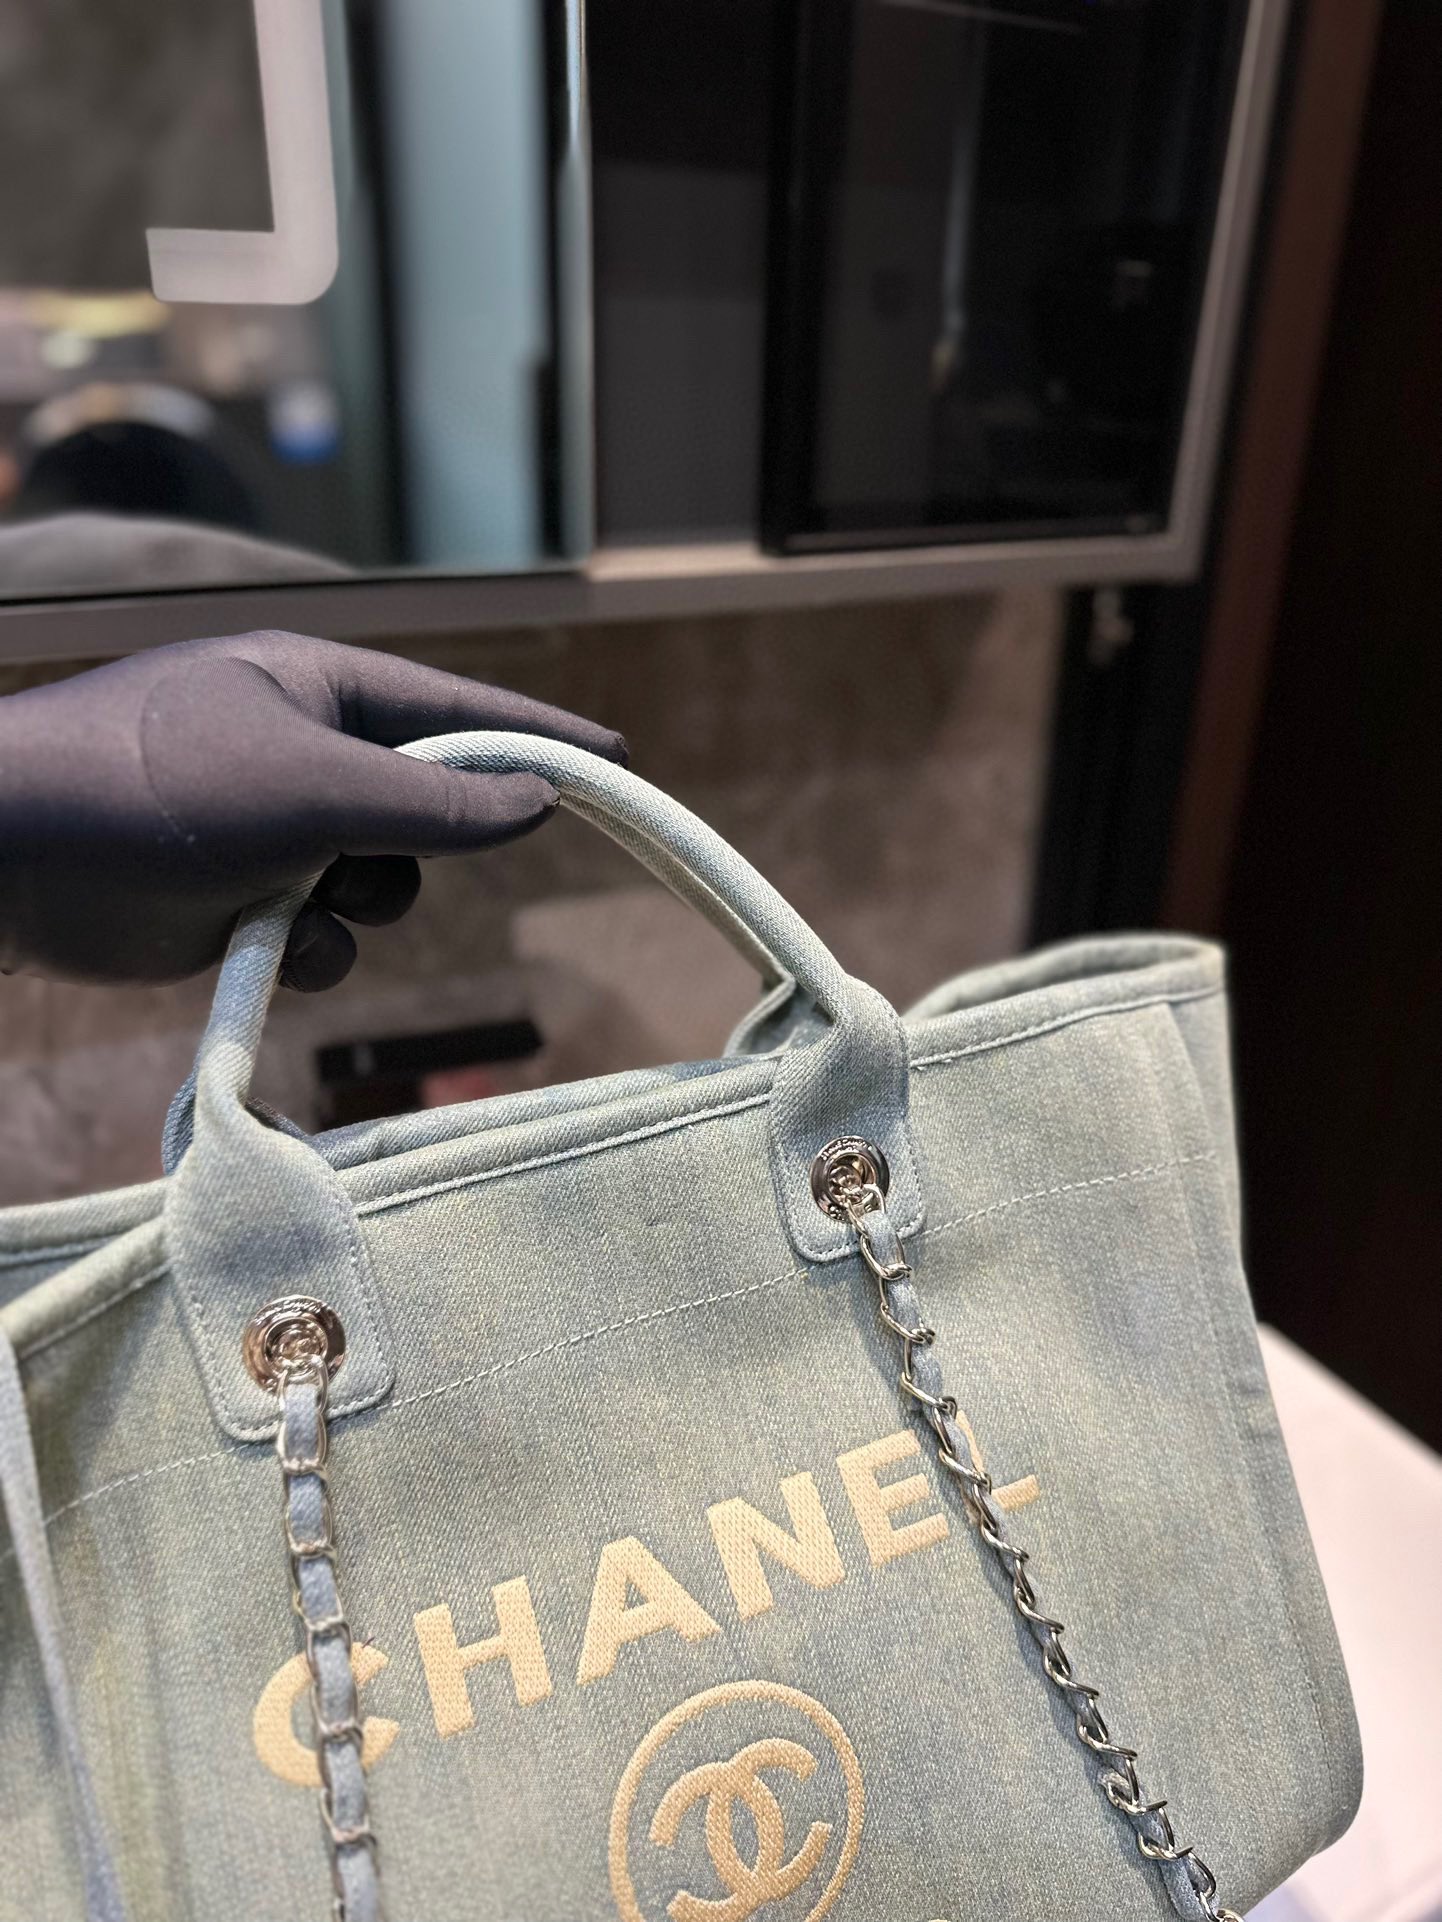 高品质 Chanel 新款香奈儿沙滩包购物袋 Chanel沙滩包每年都会出新的款 跟老款不同的logo装饰更加高端大气 容量超级可妈咪包 简约休闲的设计深受欢迎 - 点击图像关闭